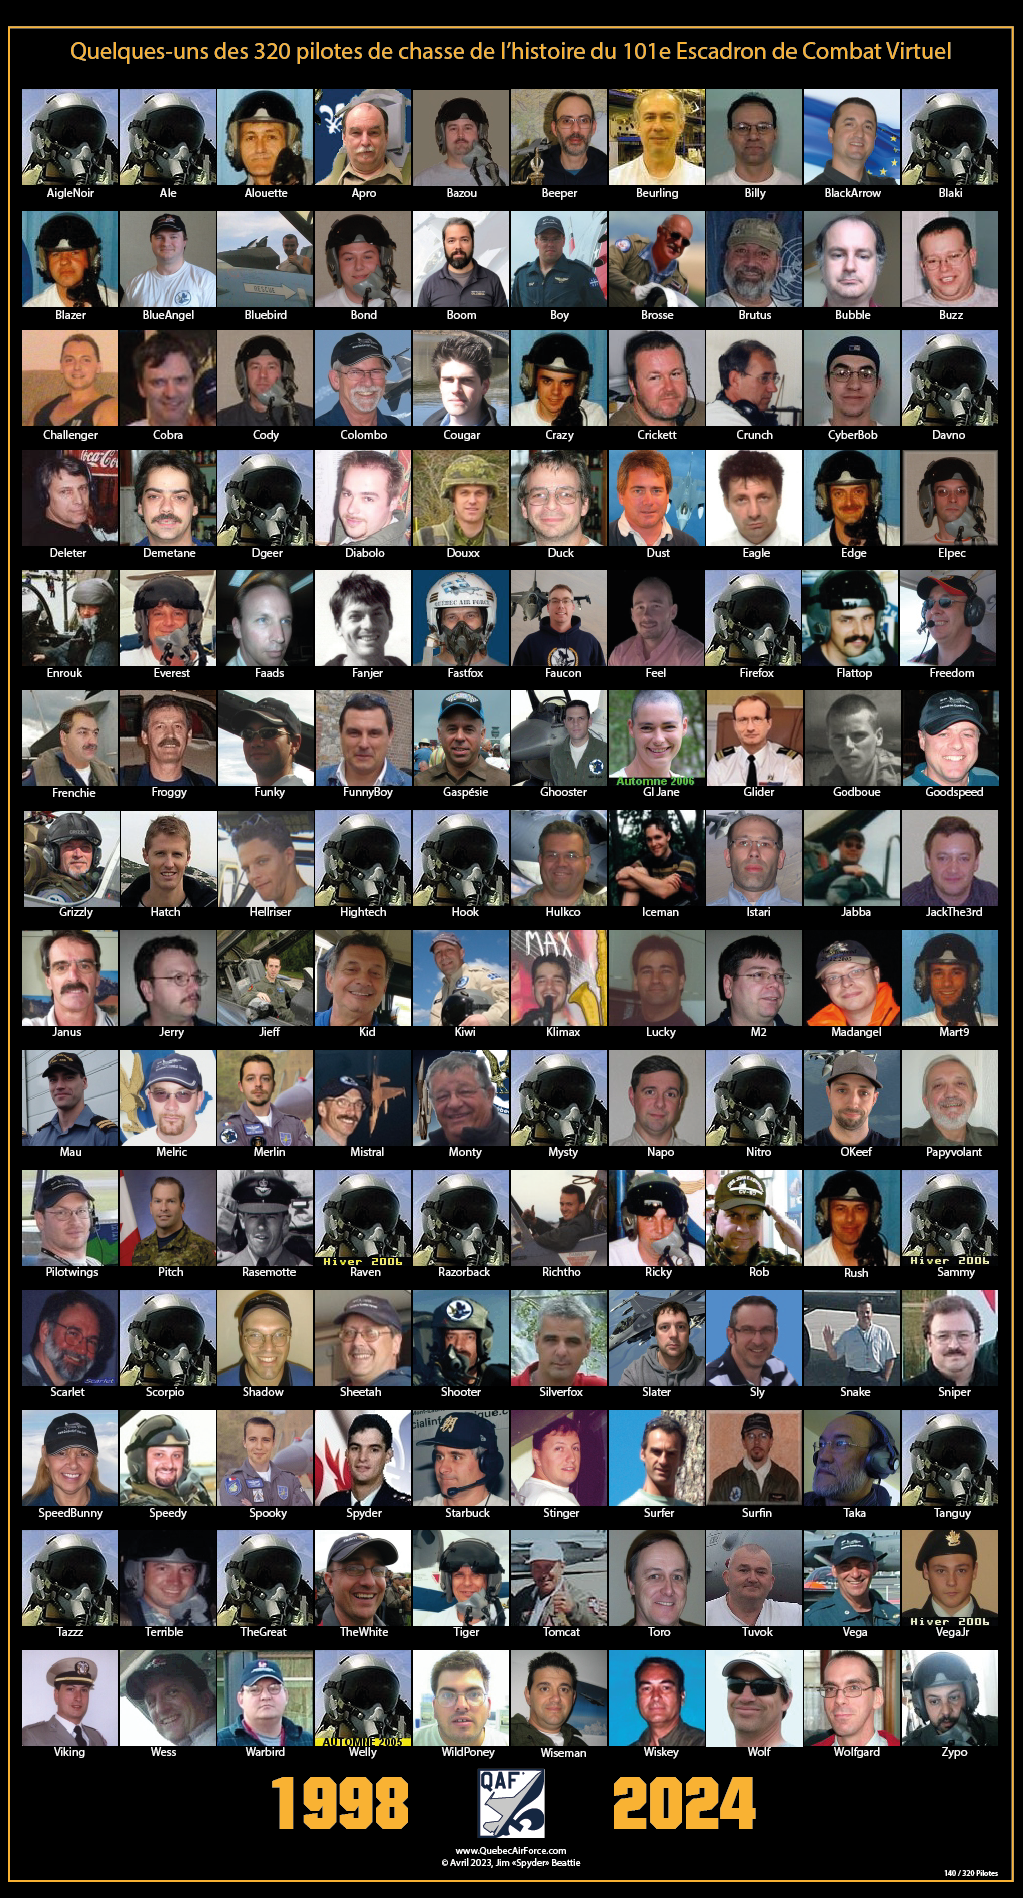 Mosaique de quelques pilotes de l'histoire du 101e ECV